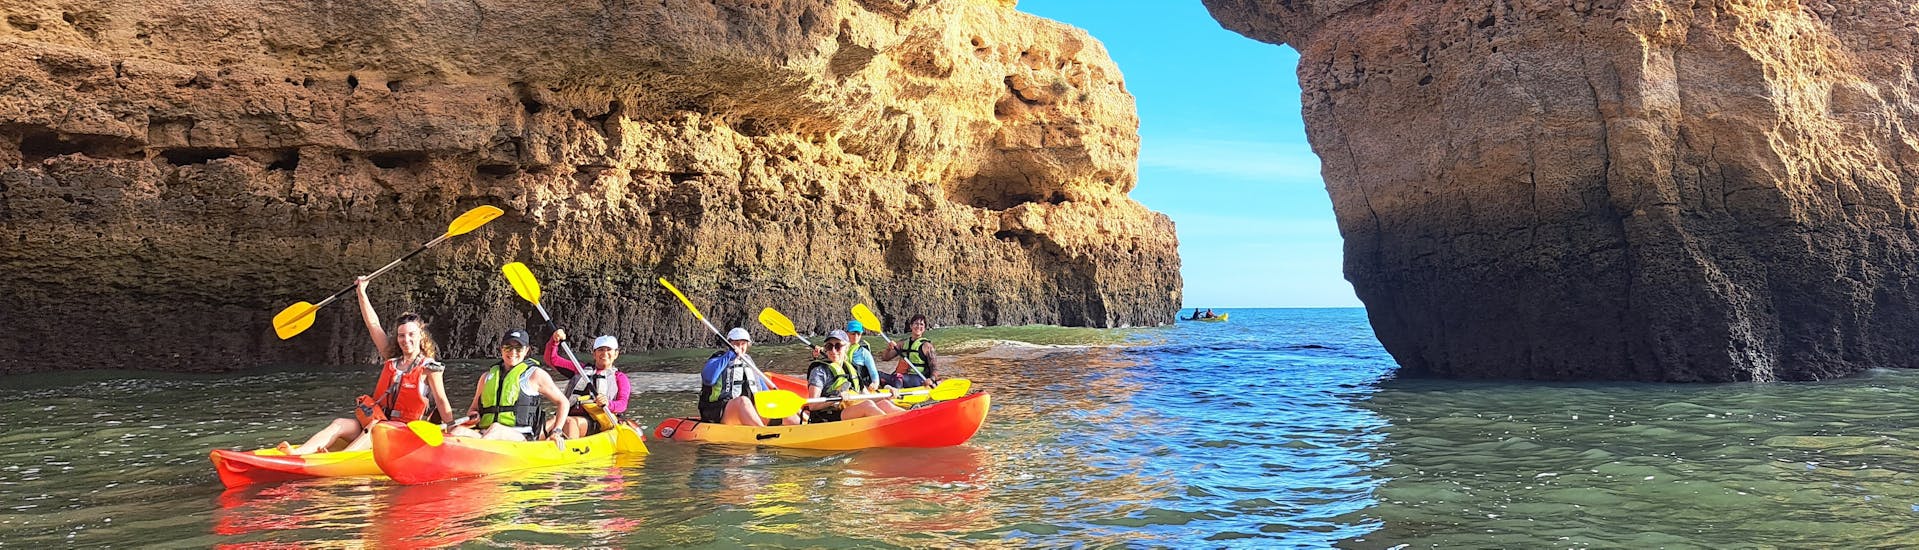 Tour en Kayak y Senderismo a las Cuevas de Benagil y Playa de Marinha desde la Playa de Albandeira.